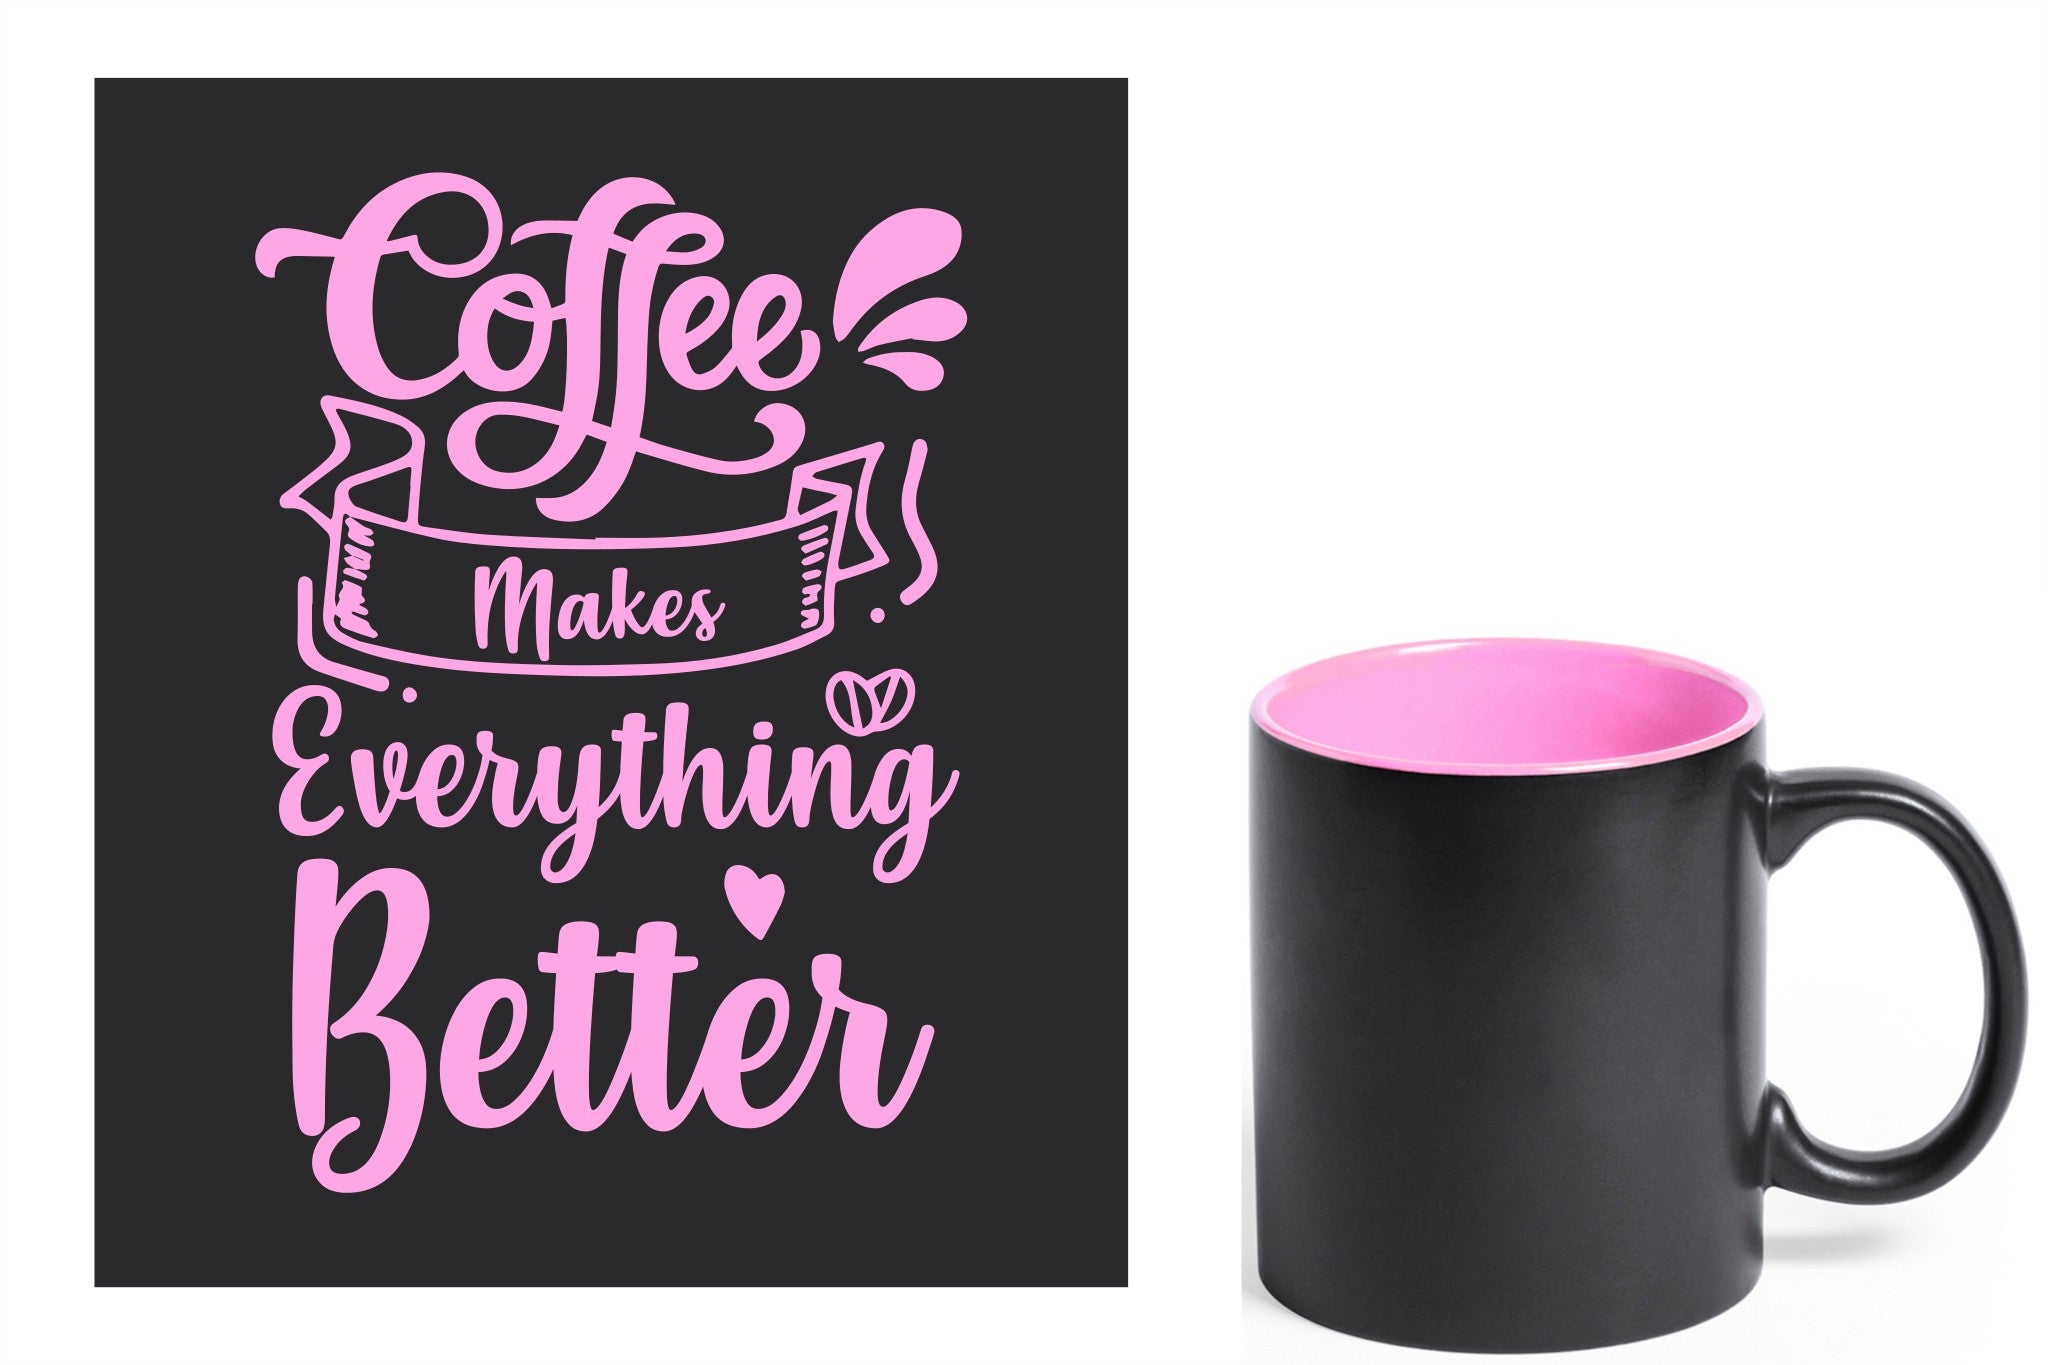 zwarte keramische mok met roze gravure  'Coffee makes everything better'.